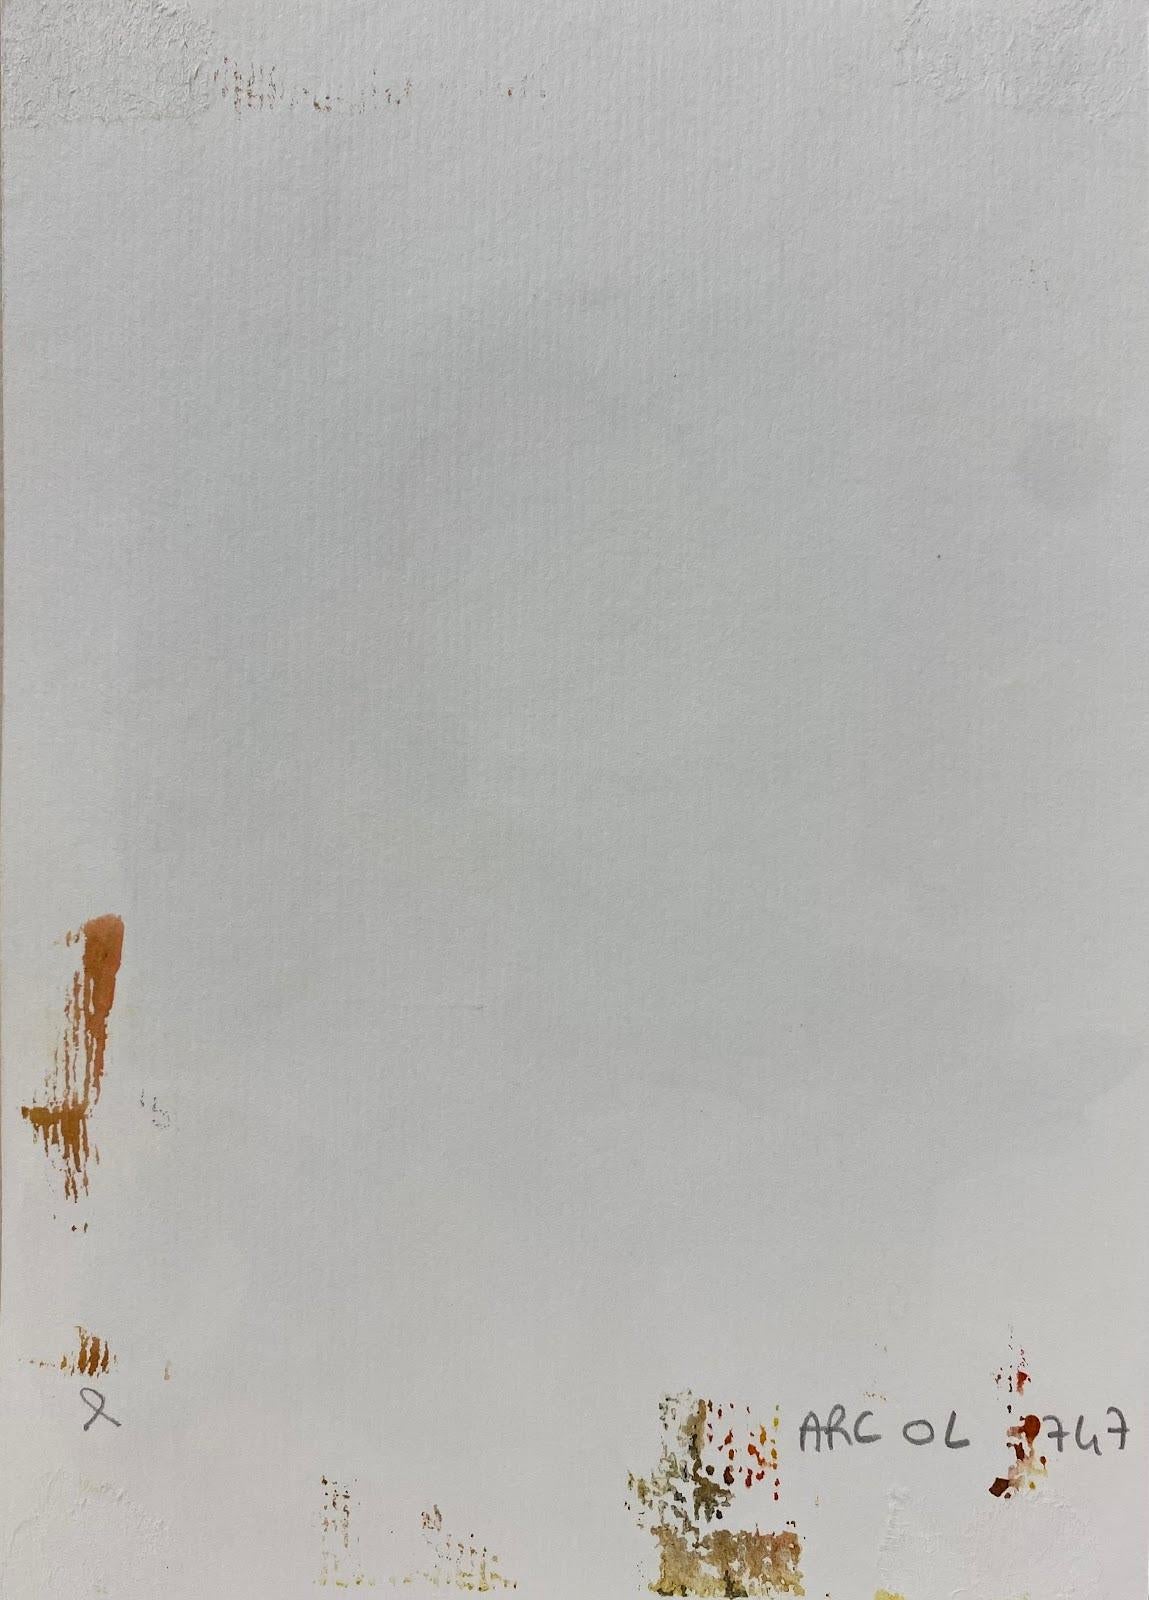 Composition expressionniste abstraite
par Jacques COULAIS (1955-2011)
peinture à la gouache sur papier/carte
sans cadre : 8,5 x 5,75 pouces
état : excellent
provenance : tous les tableaux de cet artiste que nous avons en vente proviennent du Studio